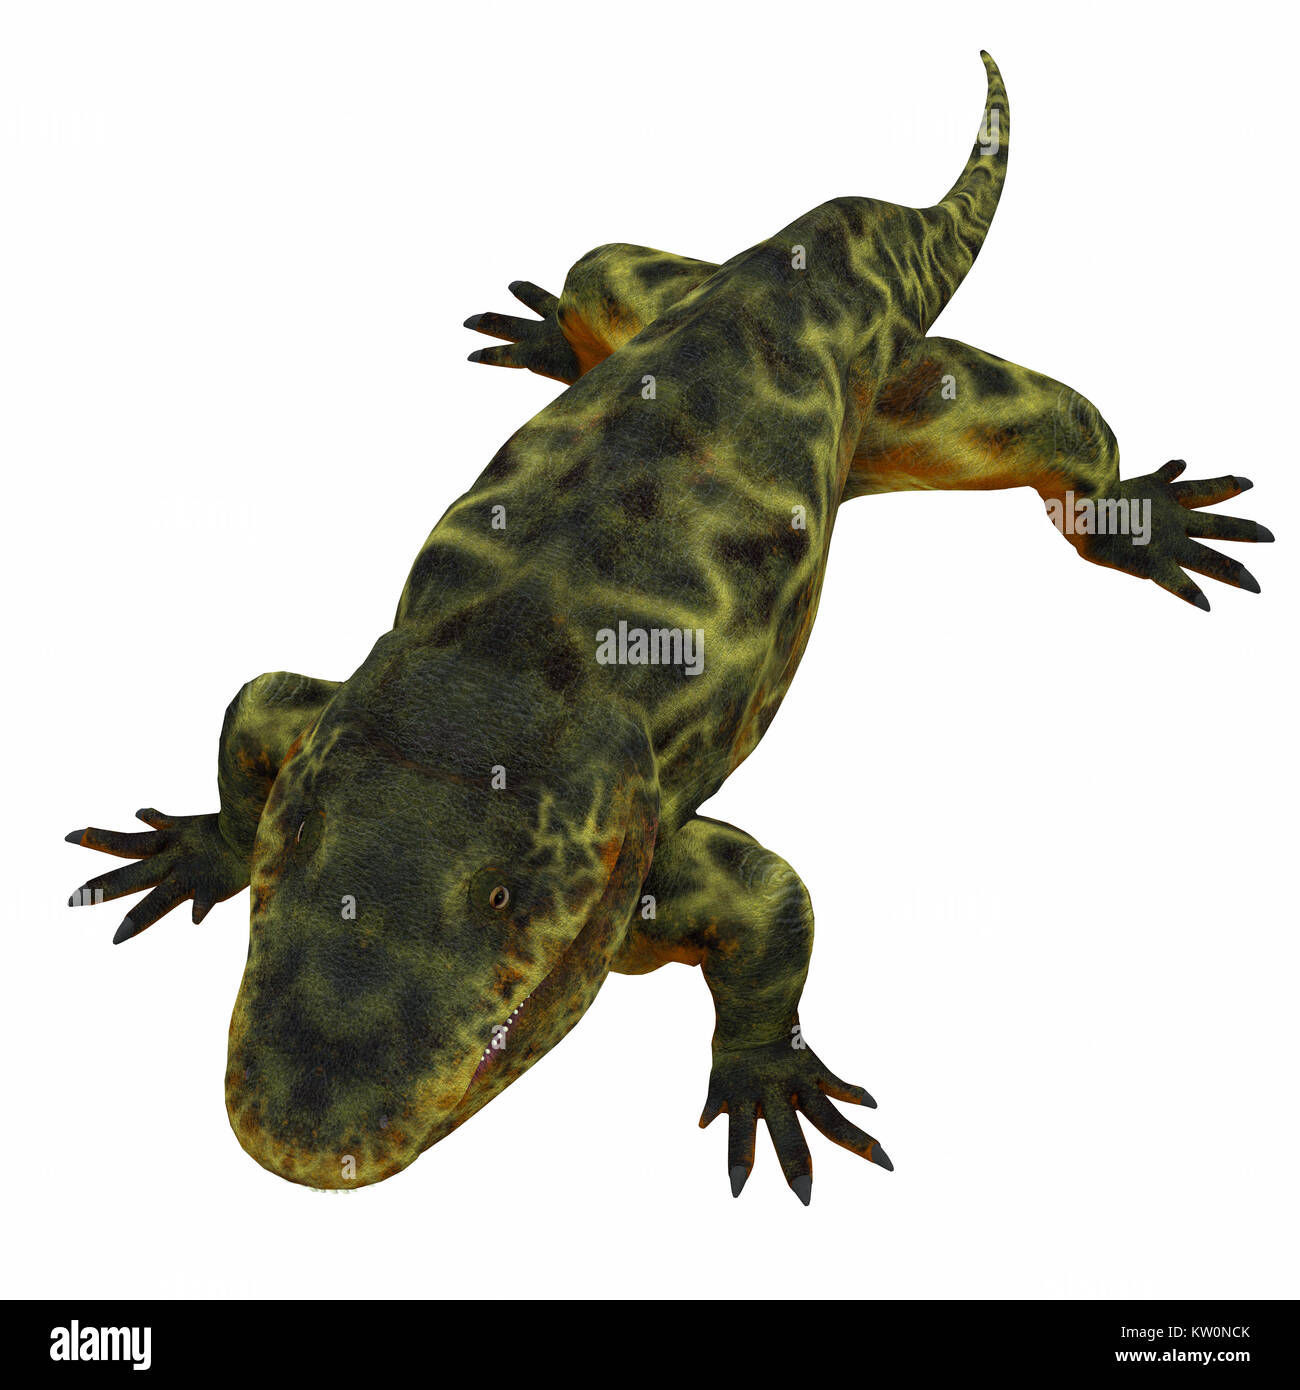 Eryops era un semi-acquatico imboscata predator molto simile al moderno coccodrillo e vissuto in Texas, Nuovo Messico e USA orientale nel periodo Permiano. Foto Stock